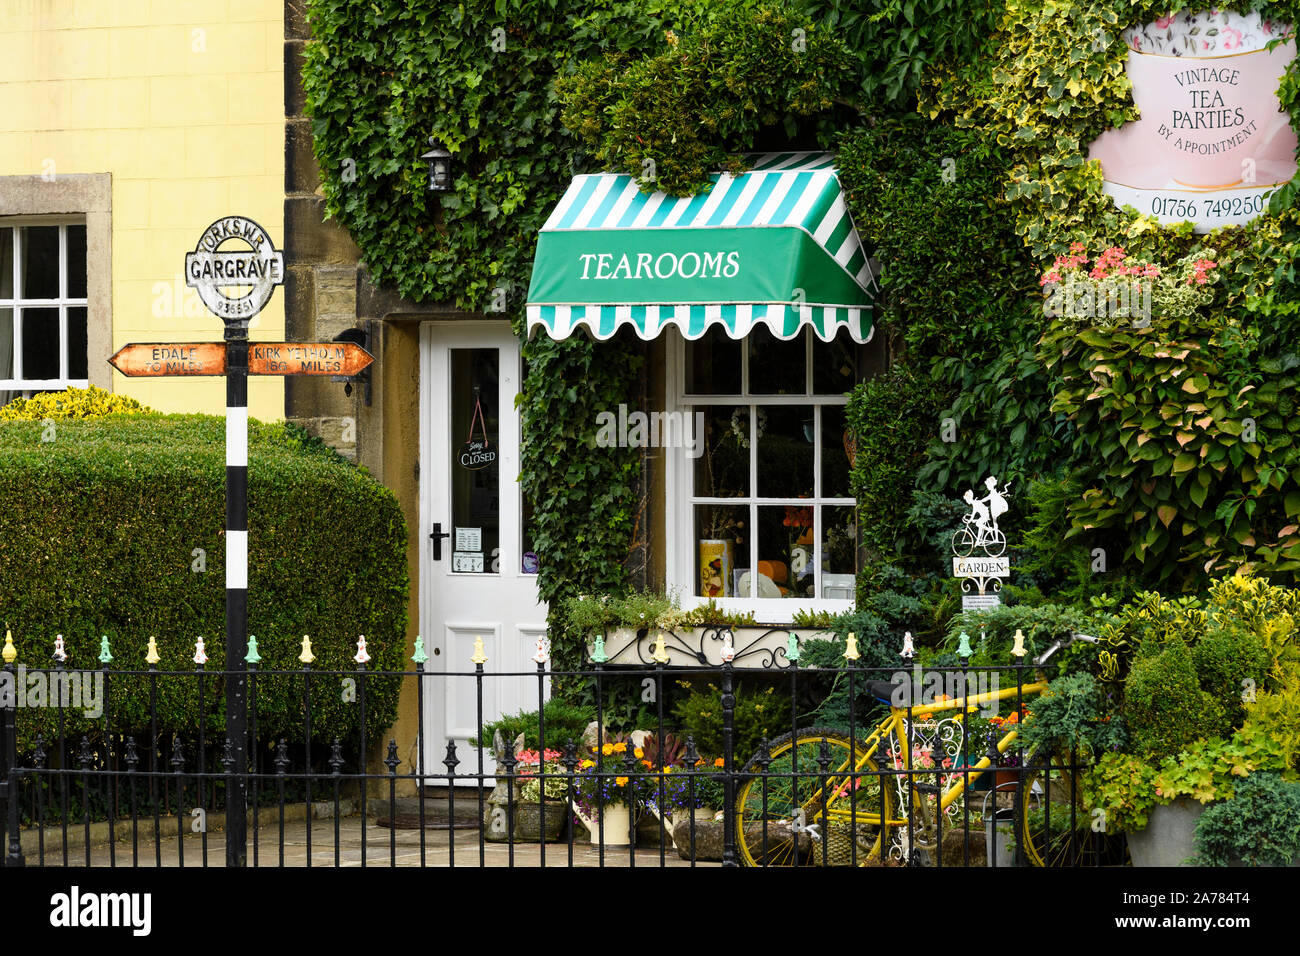 L'extérieur de l'ensoleillée invitant pittoresque Dalesman de lierre, de thé café & Sweet Emporium (entrée blanc porte fermée) - Aramits, North Yorkshire, England, UK Banque D'Images